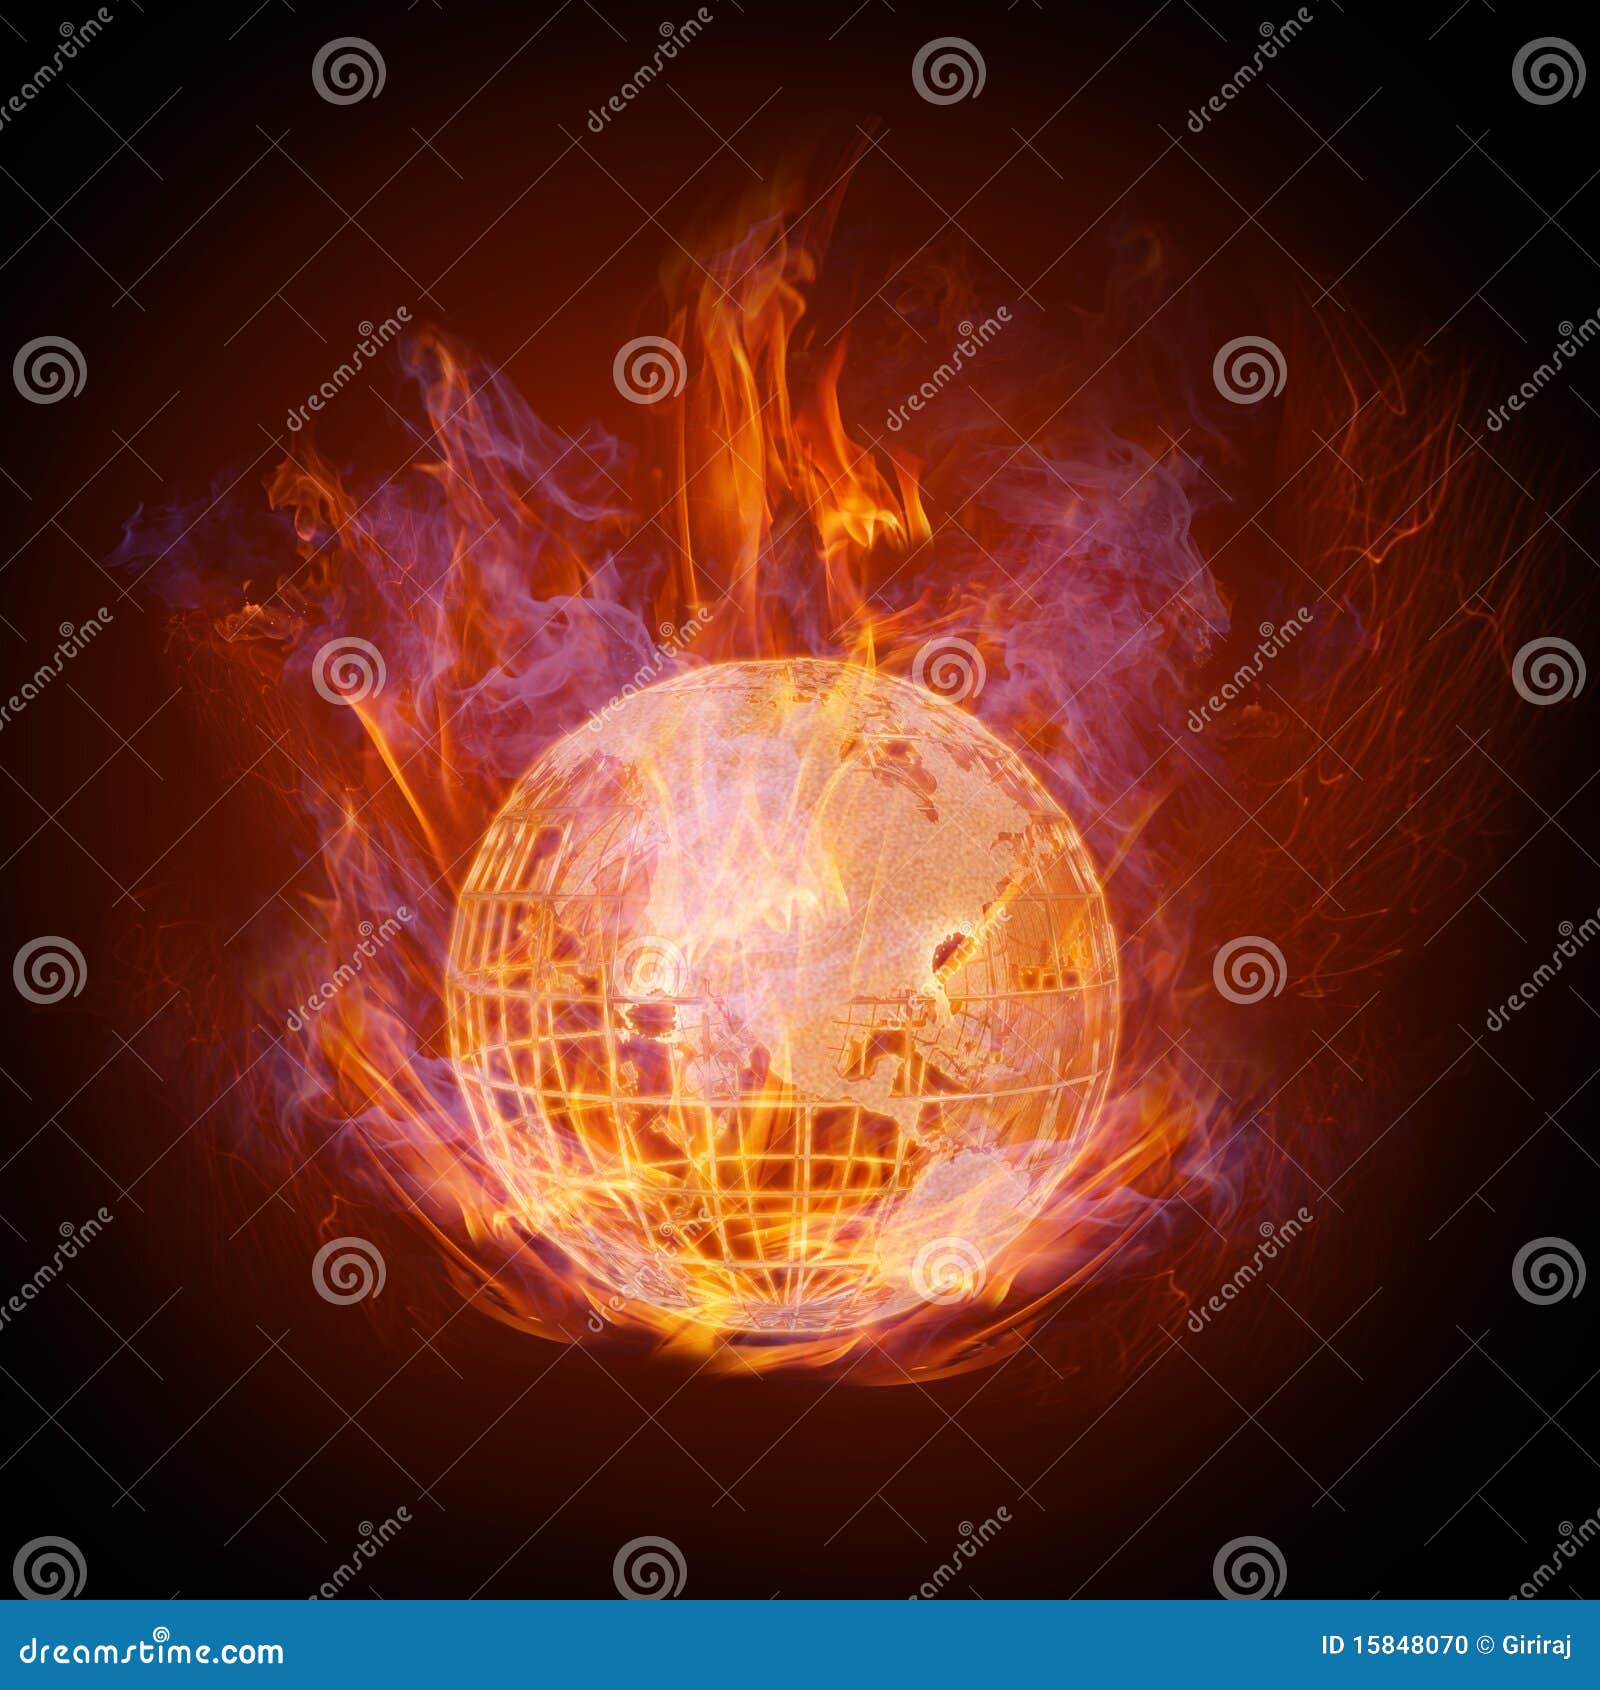 fire globe